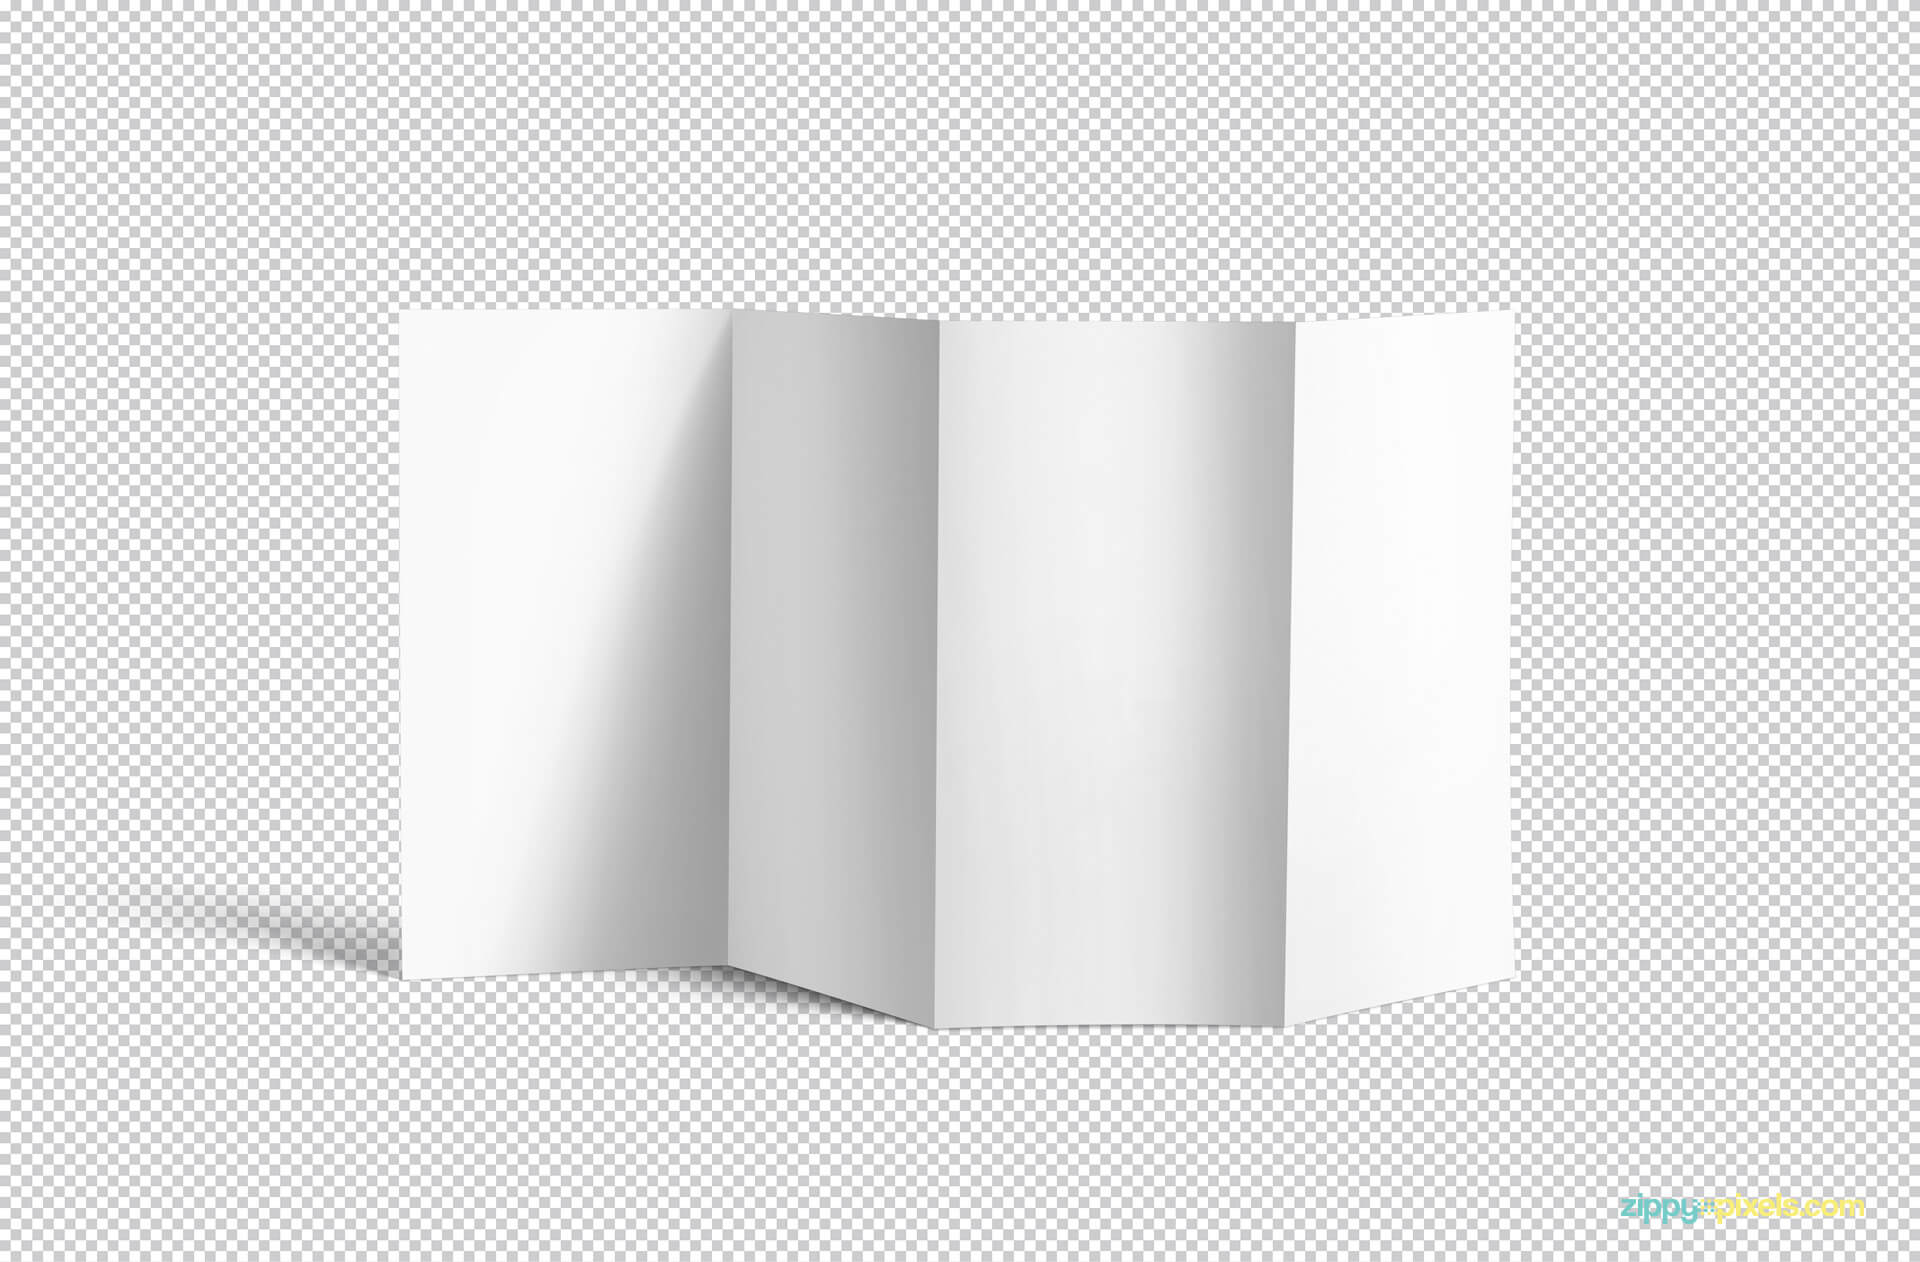 Free 4 Fold Brochure Mockup | Zippypixels In 4 Fold Brochure Template